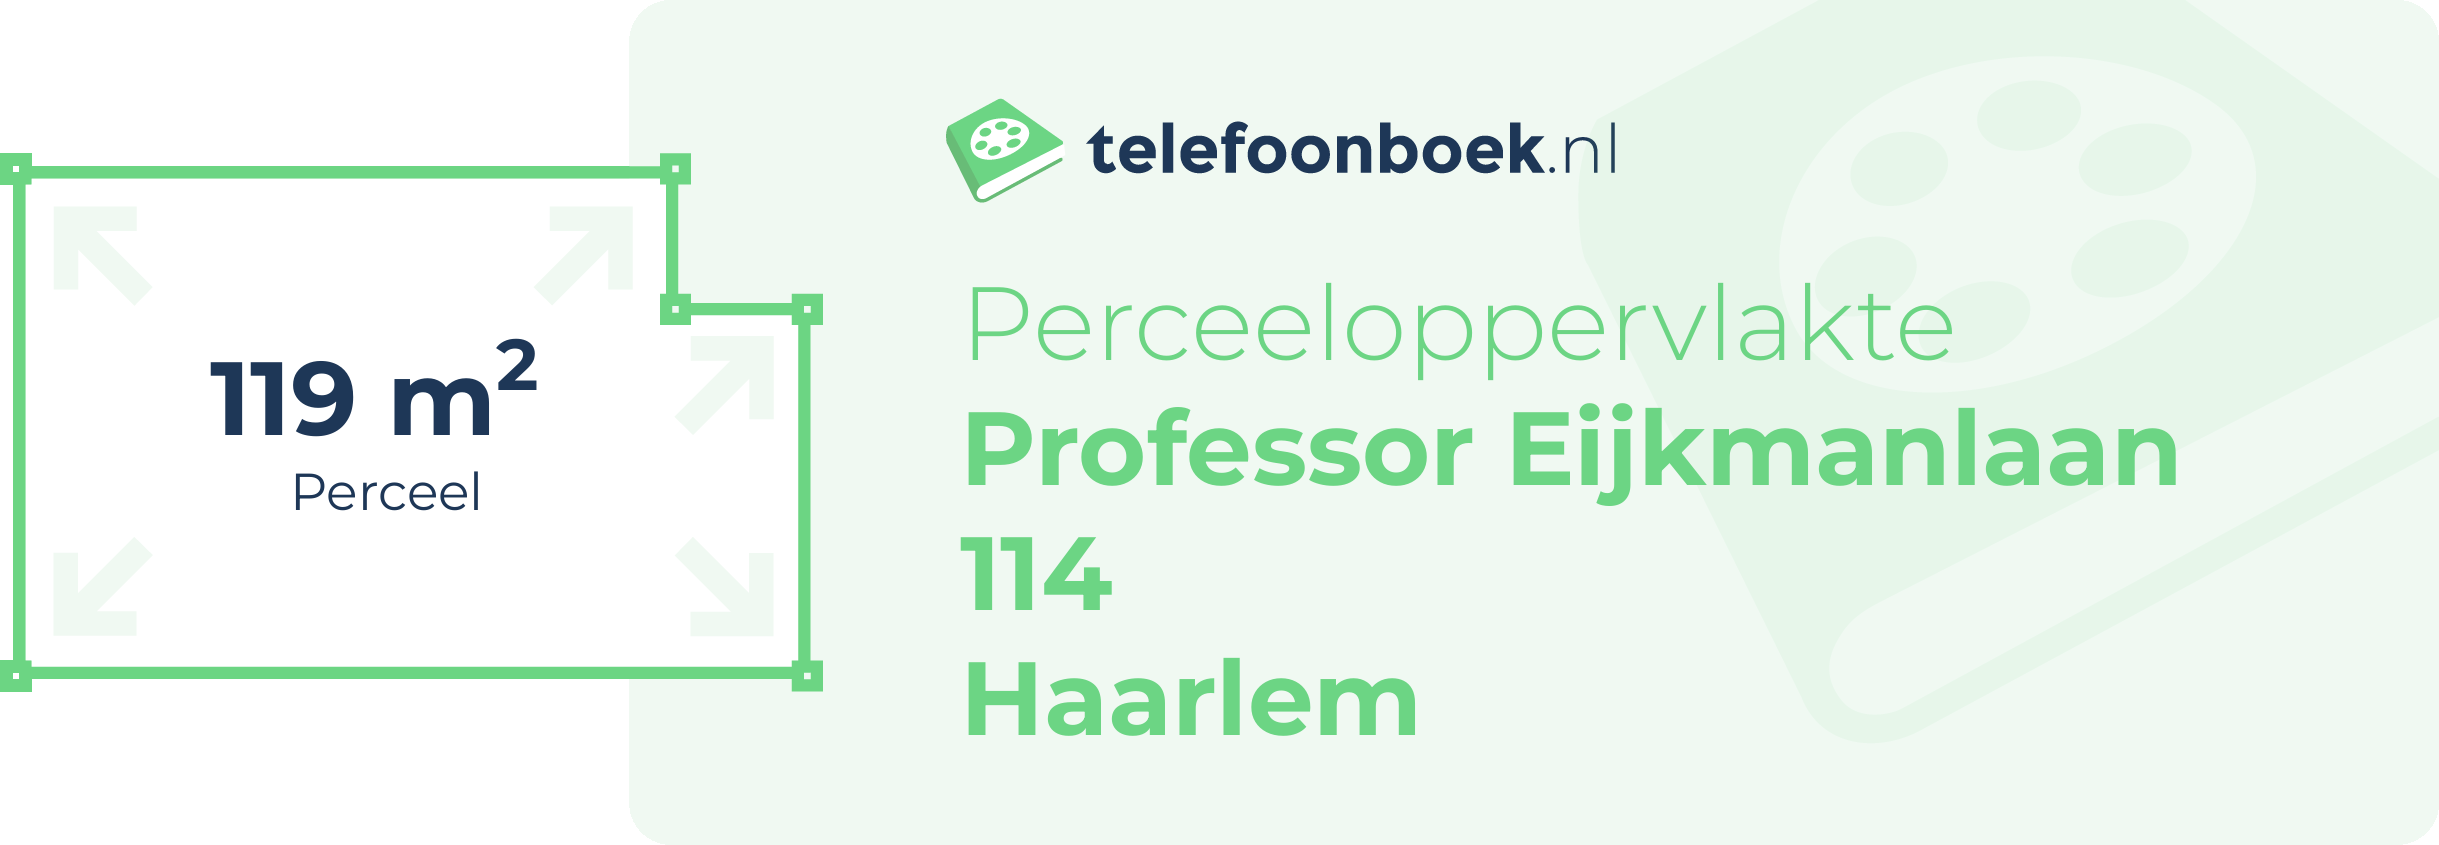 Perceeloppervlakte Professor Eijkmanlaan 114 Haarlem